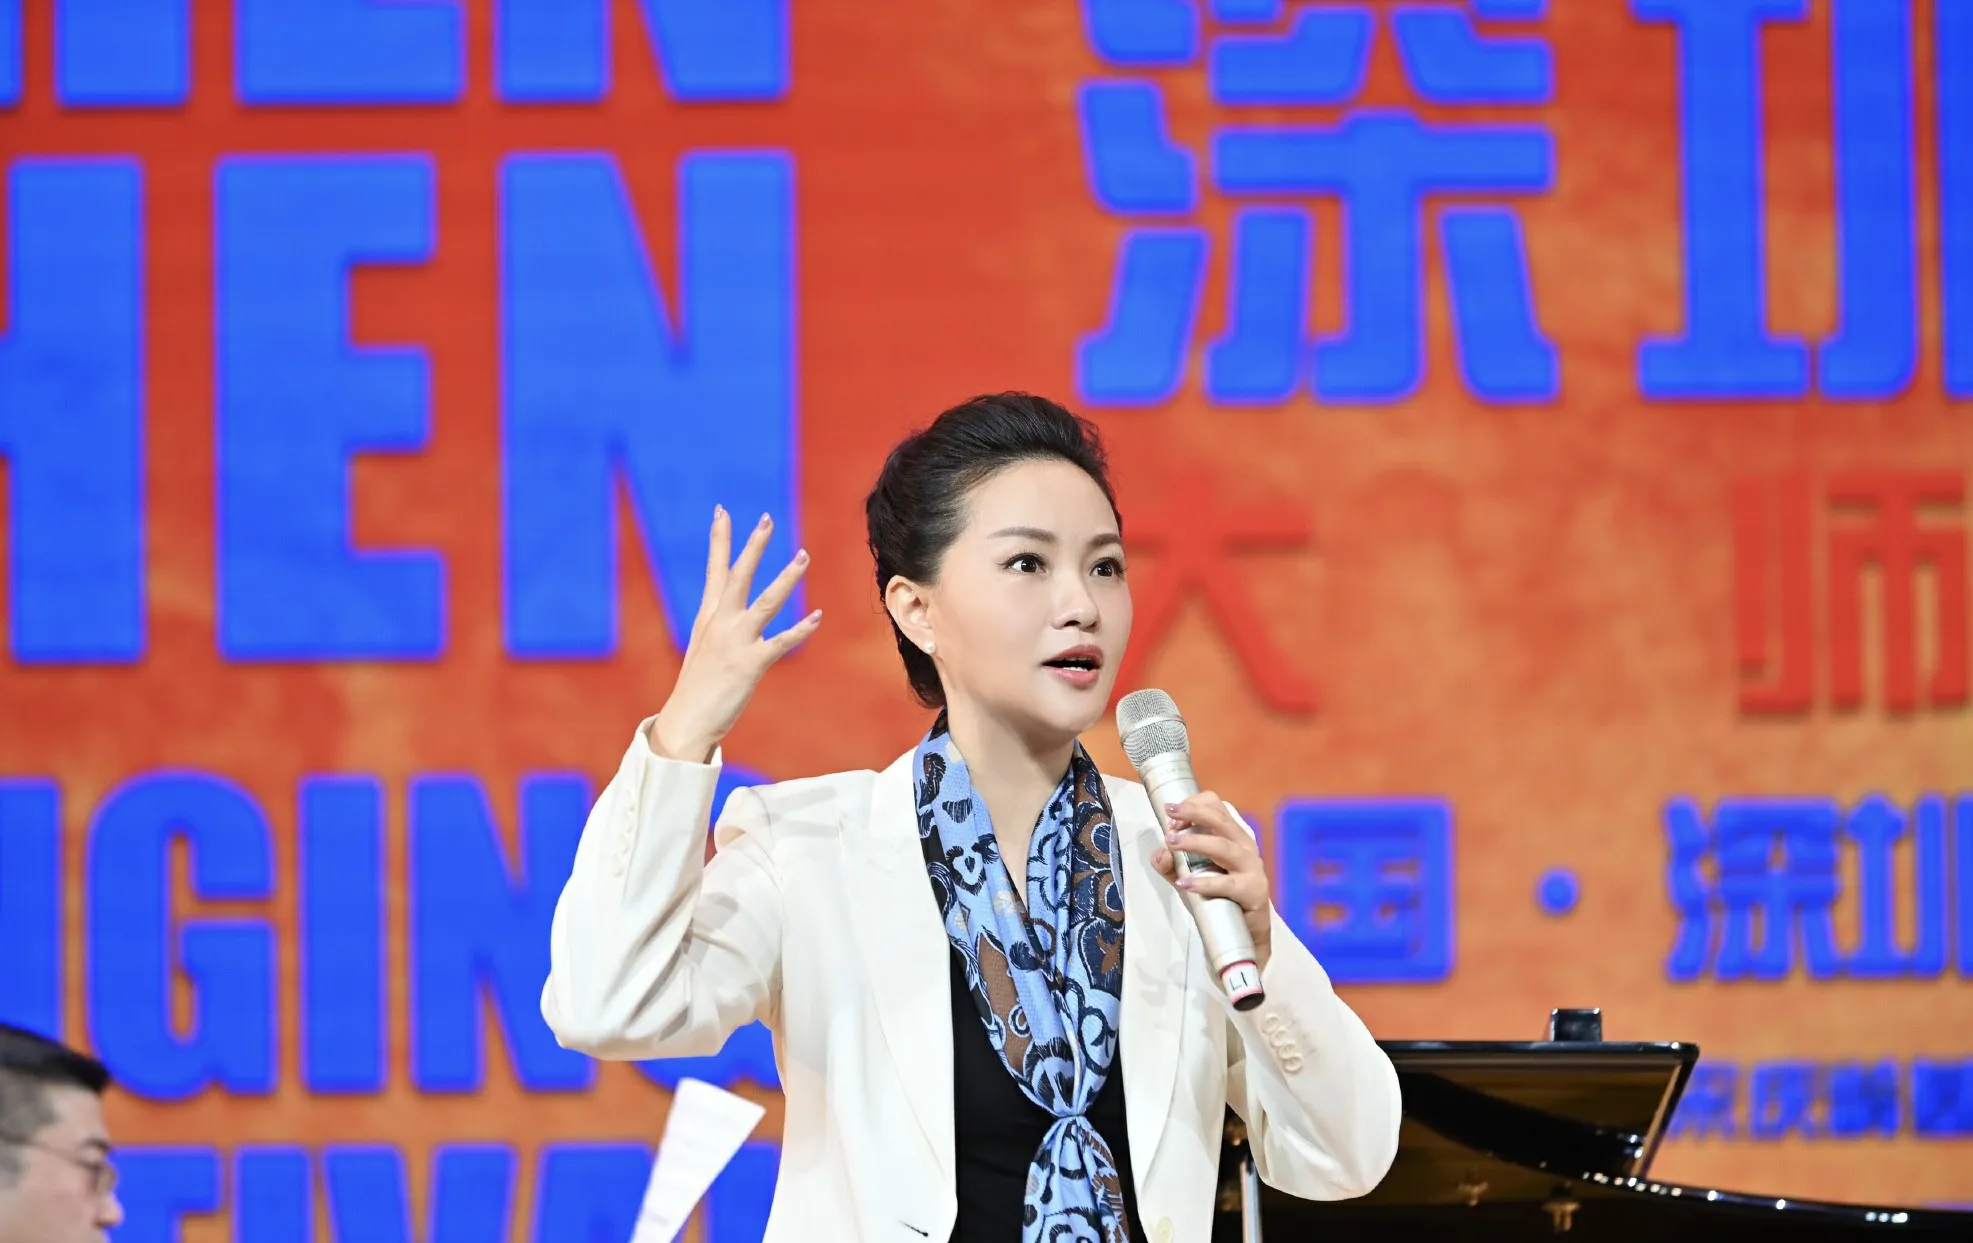  Lei Jia 发布“中国声乐人才培养计划·大师公开课”系列公益课程3.jpg